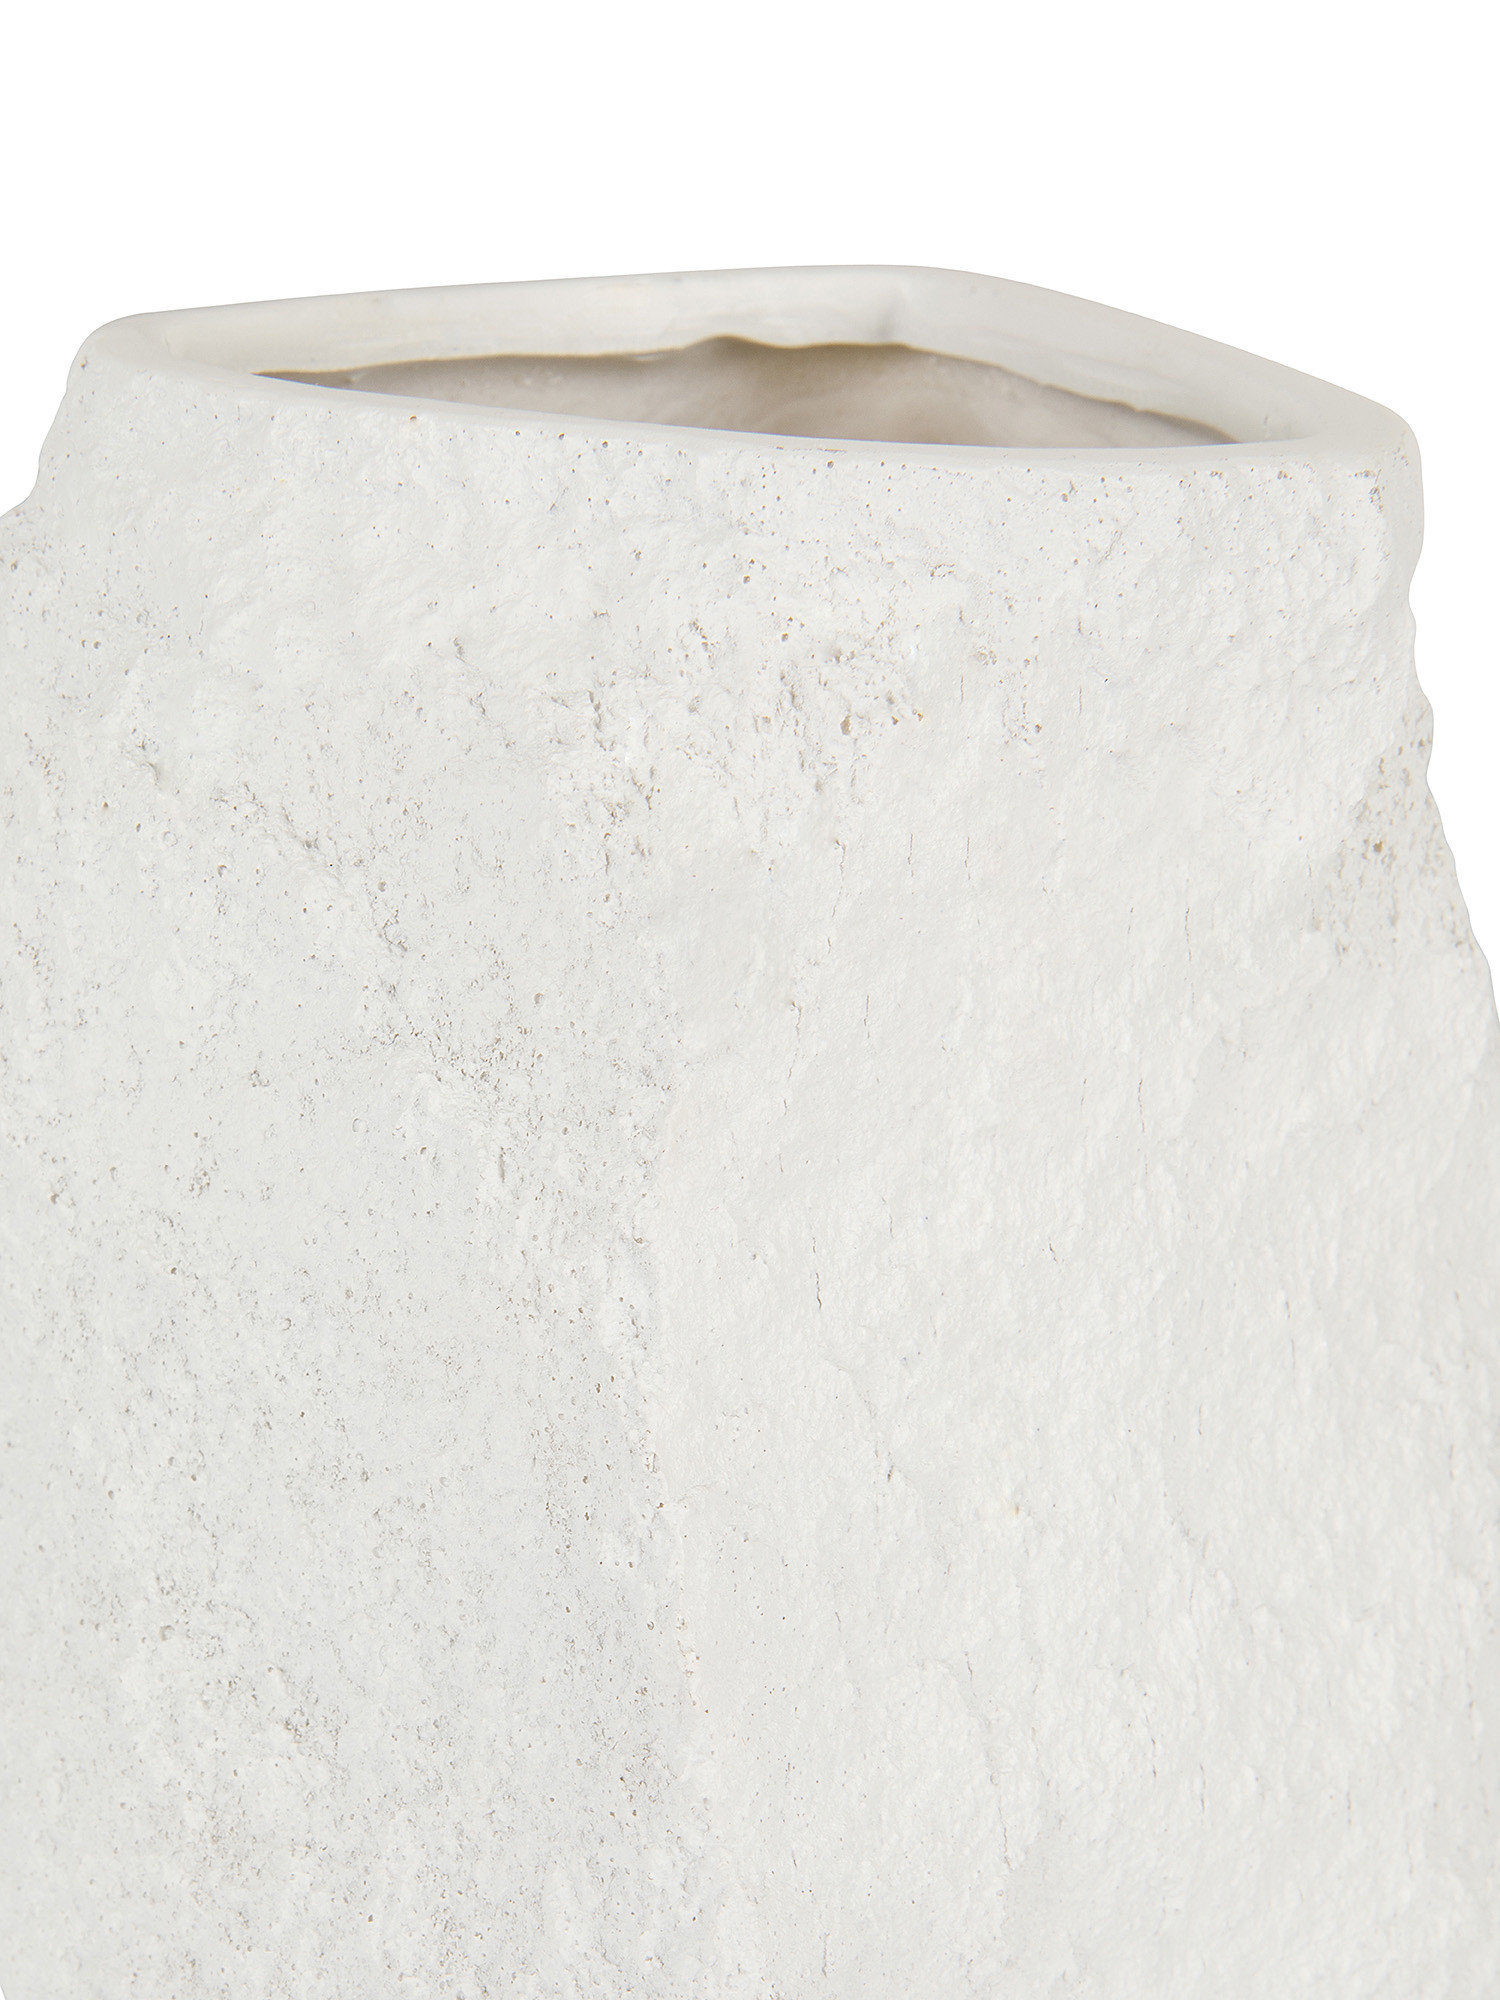 Vaso poliresina effetto roccia, Bianco, large image number 1